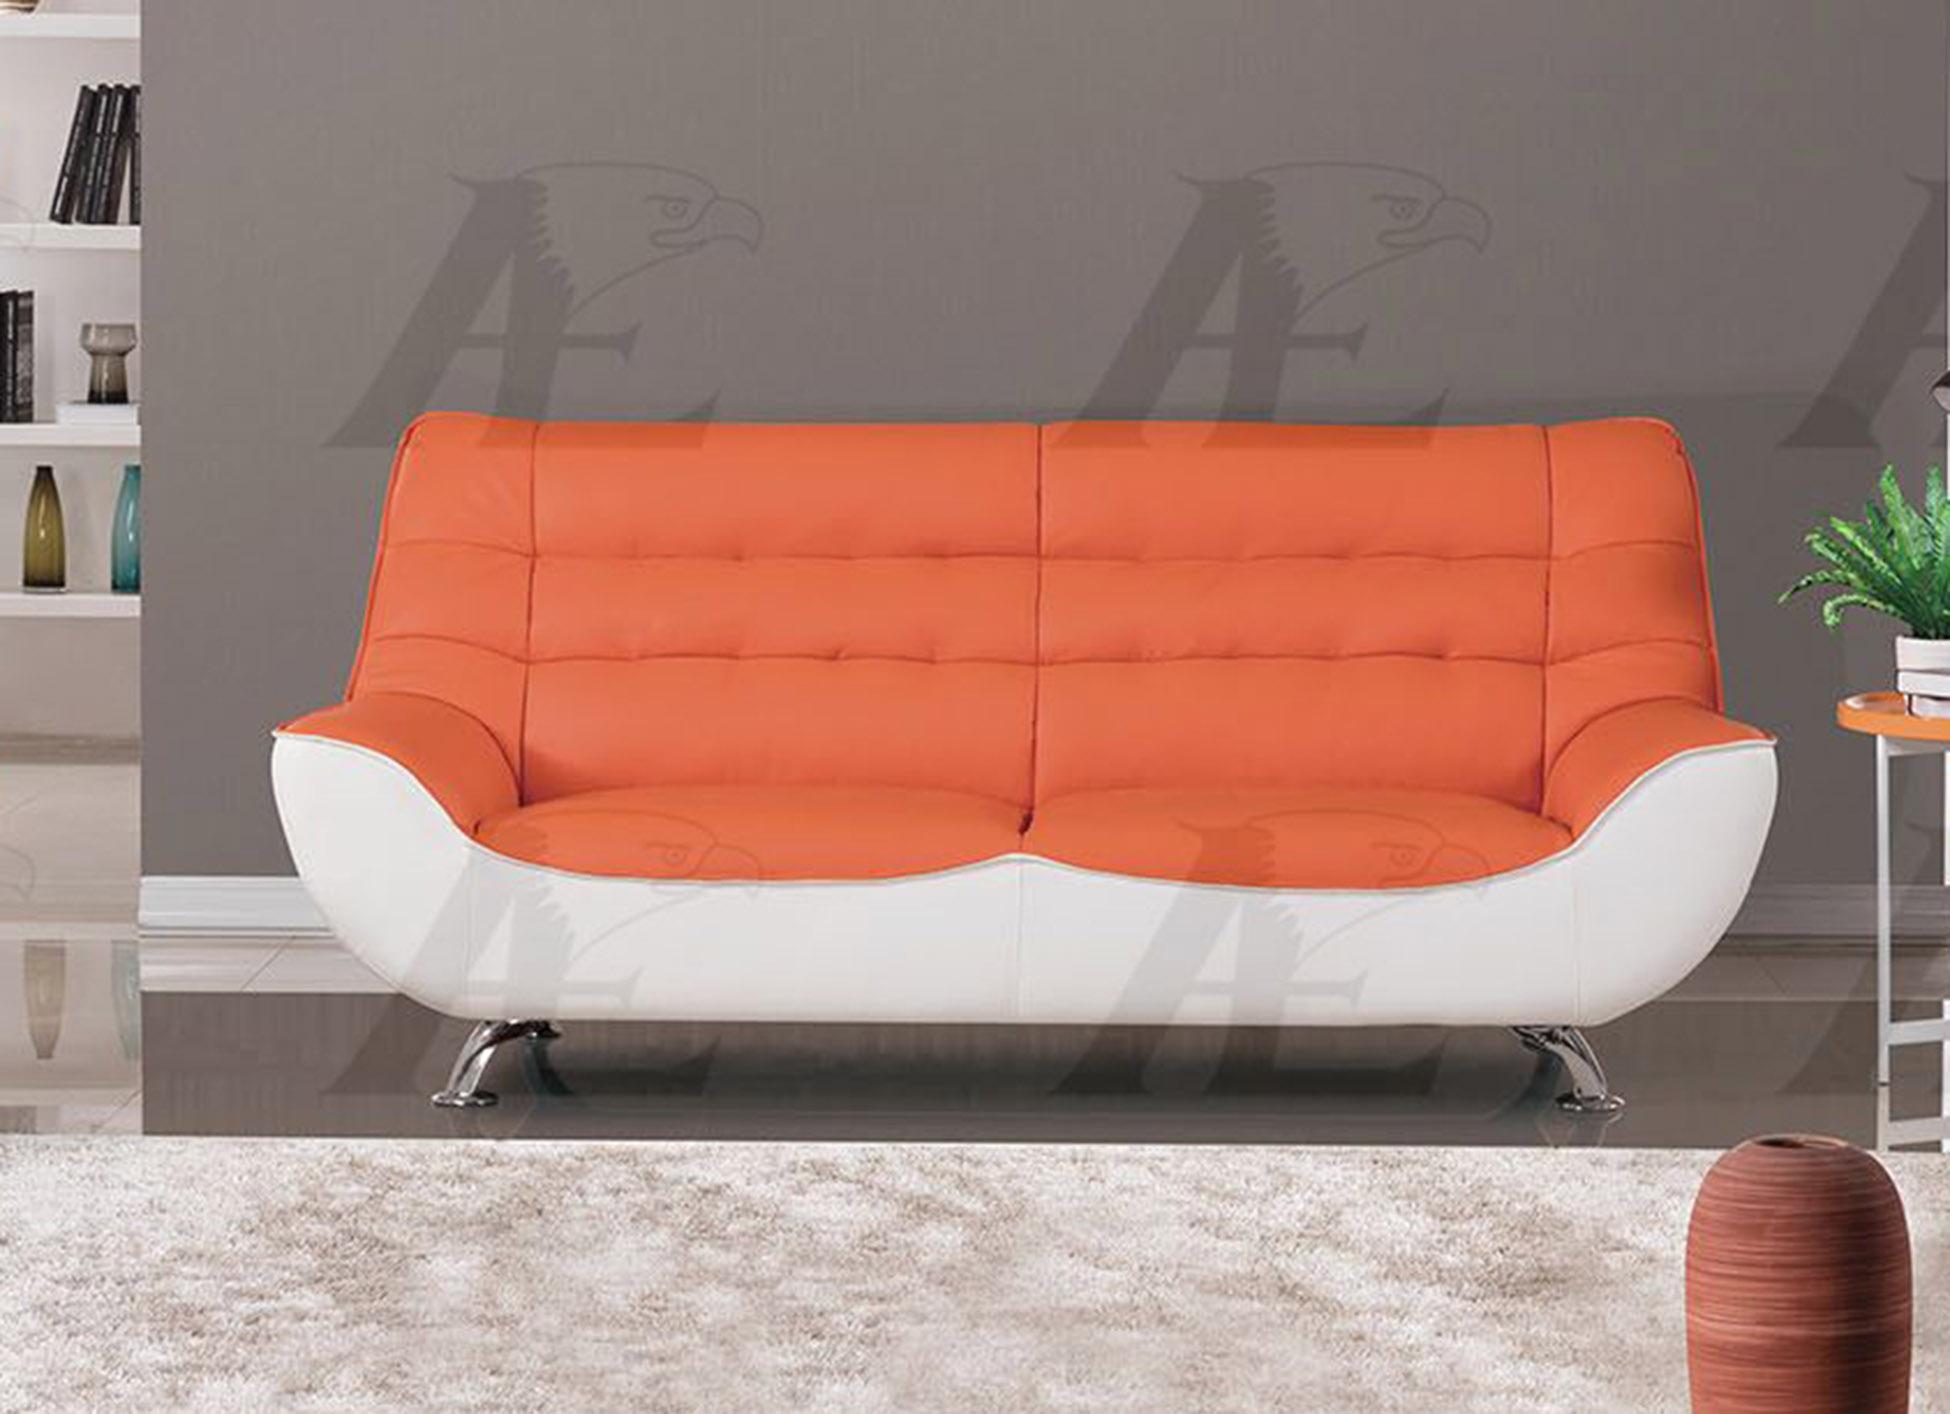 

    
American Eagle Furniture AE612-ORG.W Sofa Orange/White AE612-ORG.W
